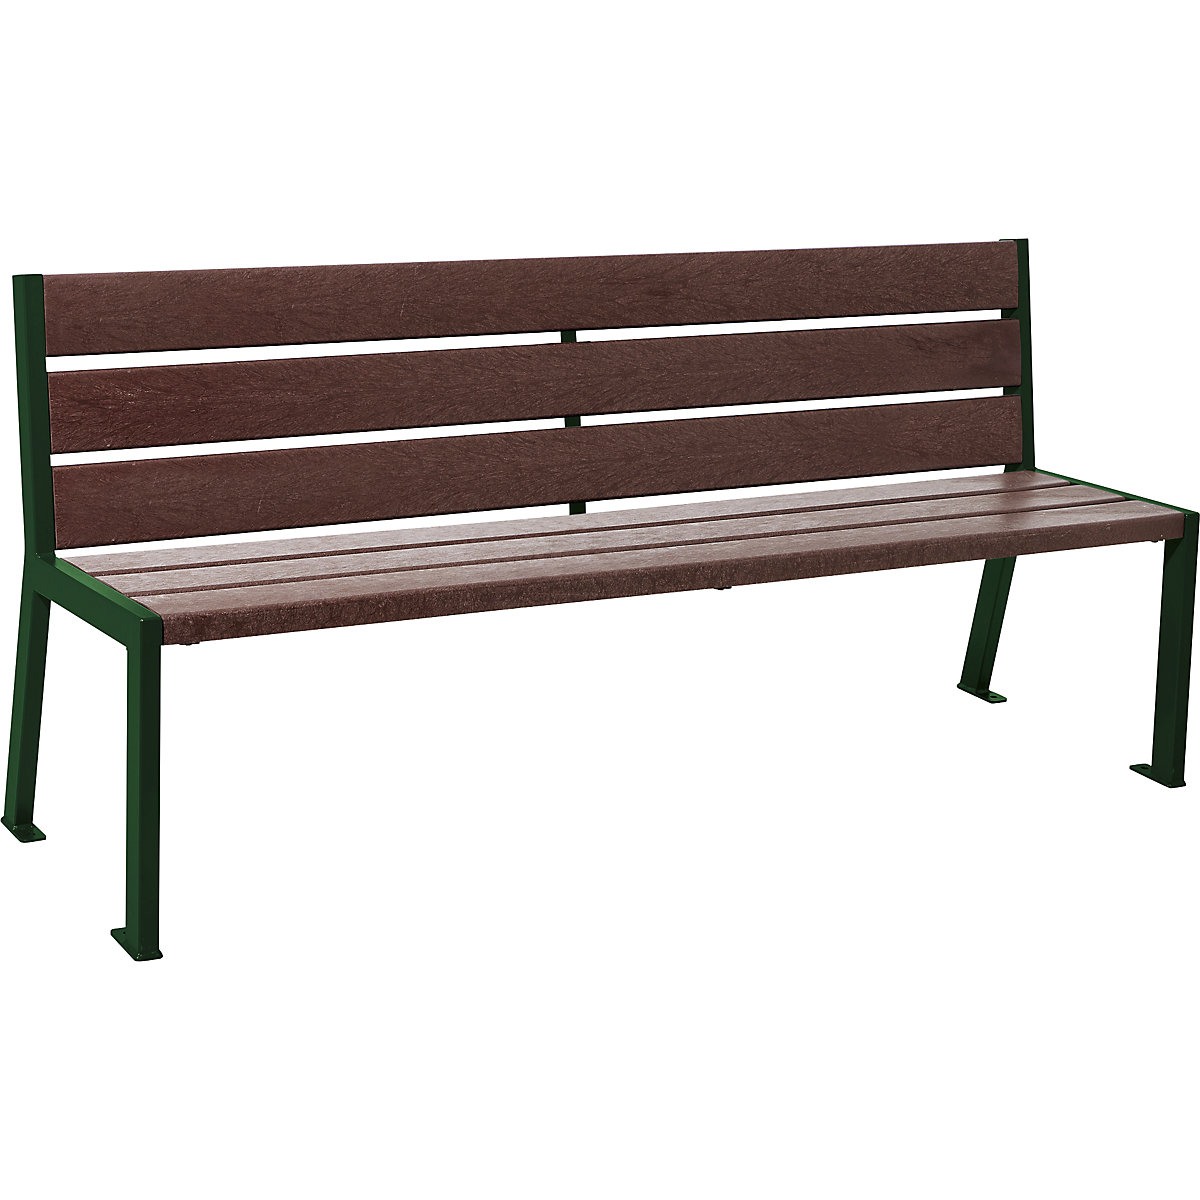 PROCITY Sitzbank SILAOS® aus Recycling-Kunststoff, mit Rückenlehne, moosgrün RAL 6005, braun, 6 Sitz- und Lehnenbohlen